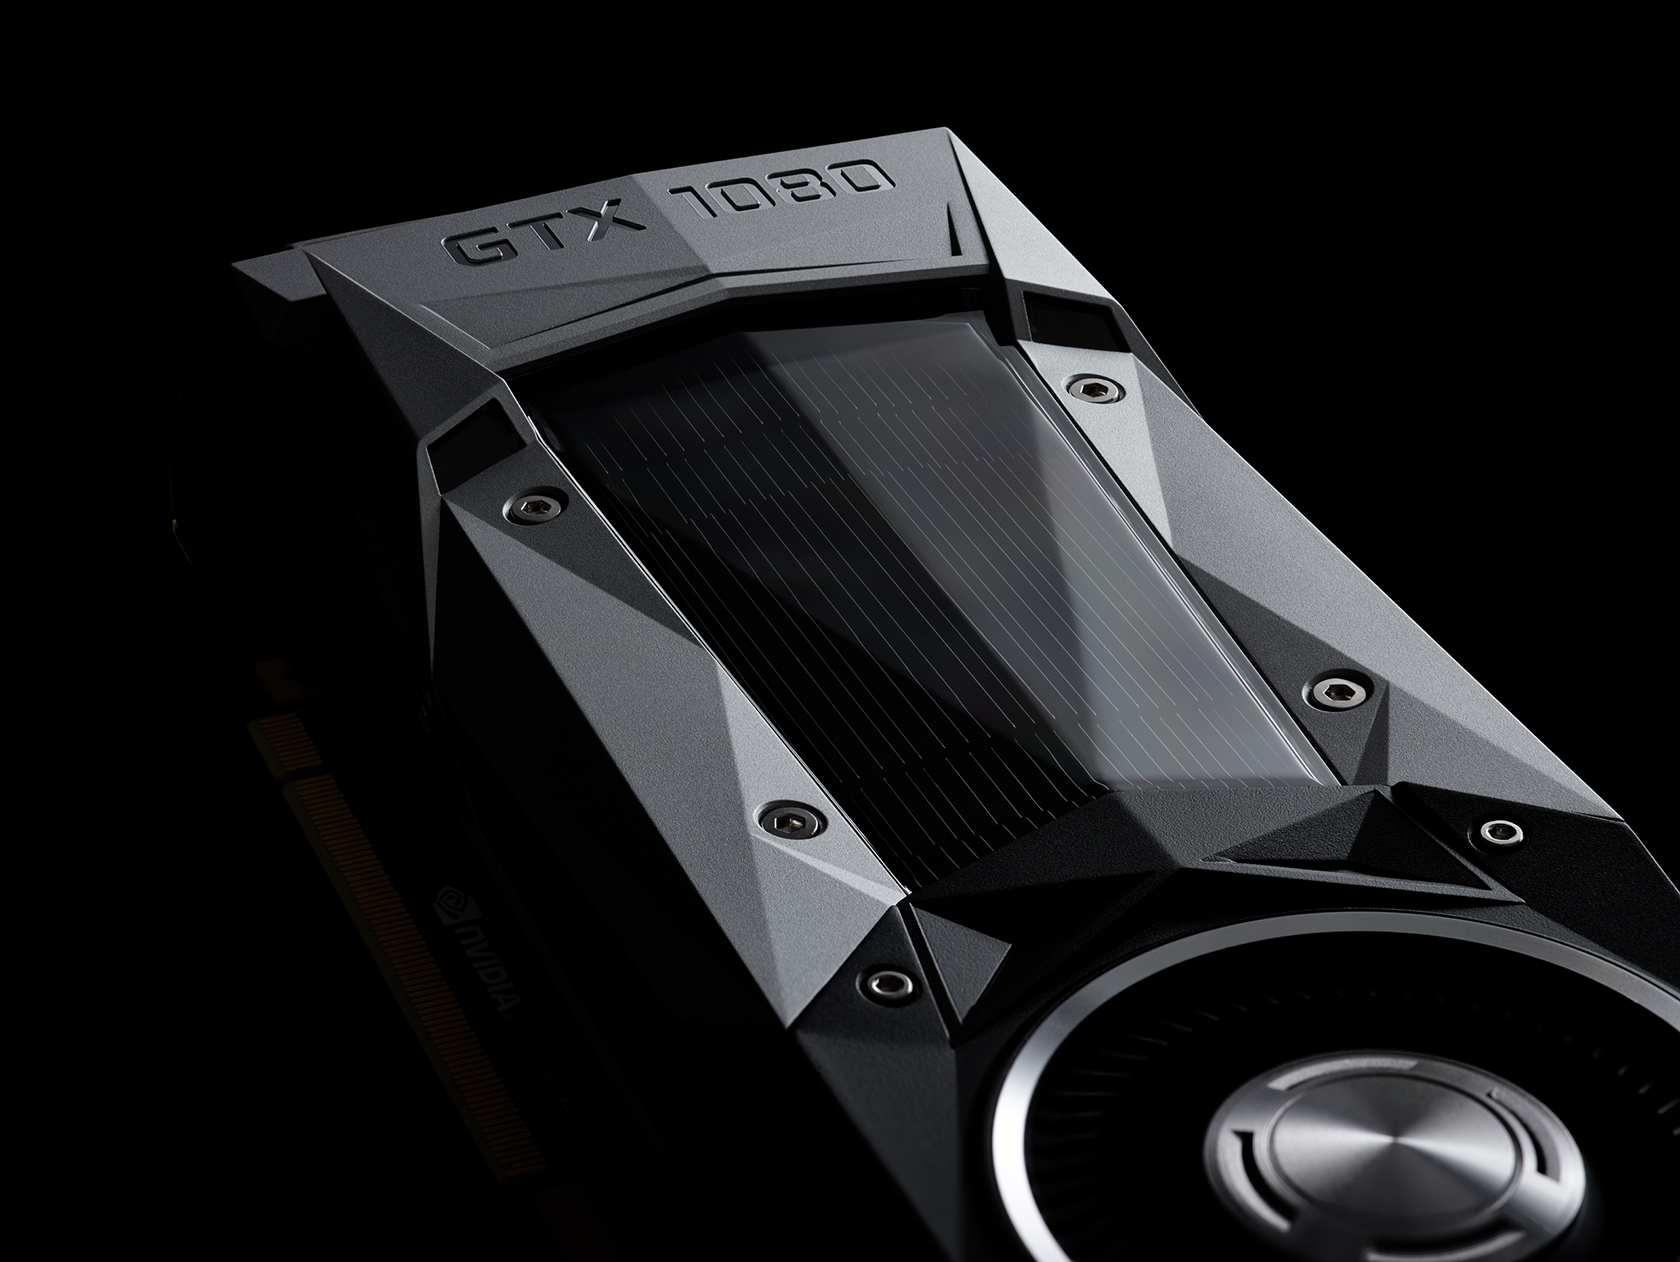 Νέα Nvidia GeForce GTX 1080. Ταχύτερη από GTX 980 SLI και από Titan X με τη μισή τιμή